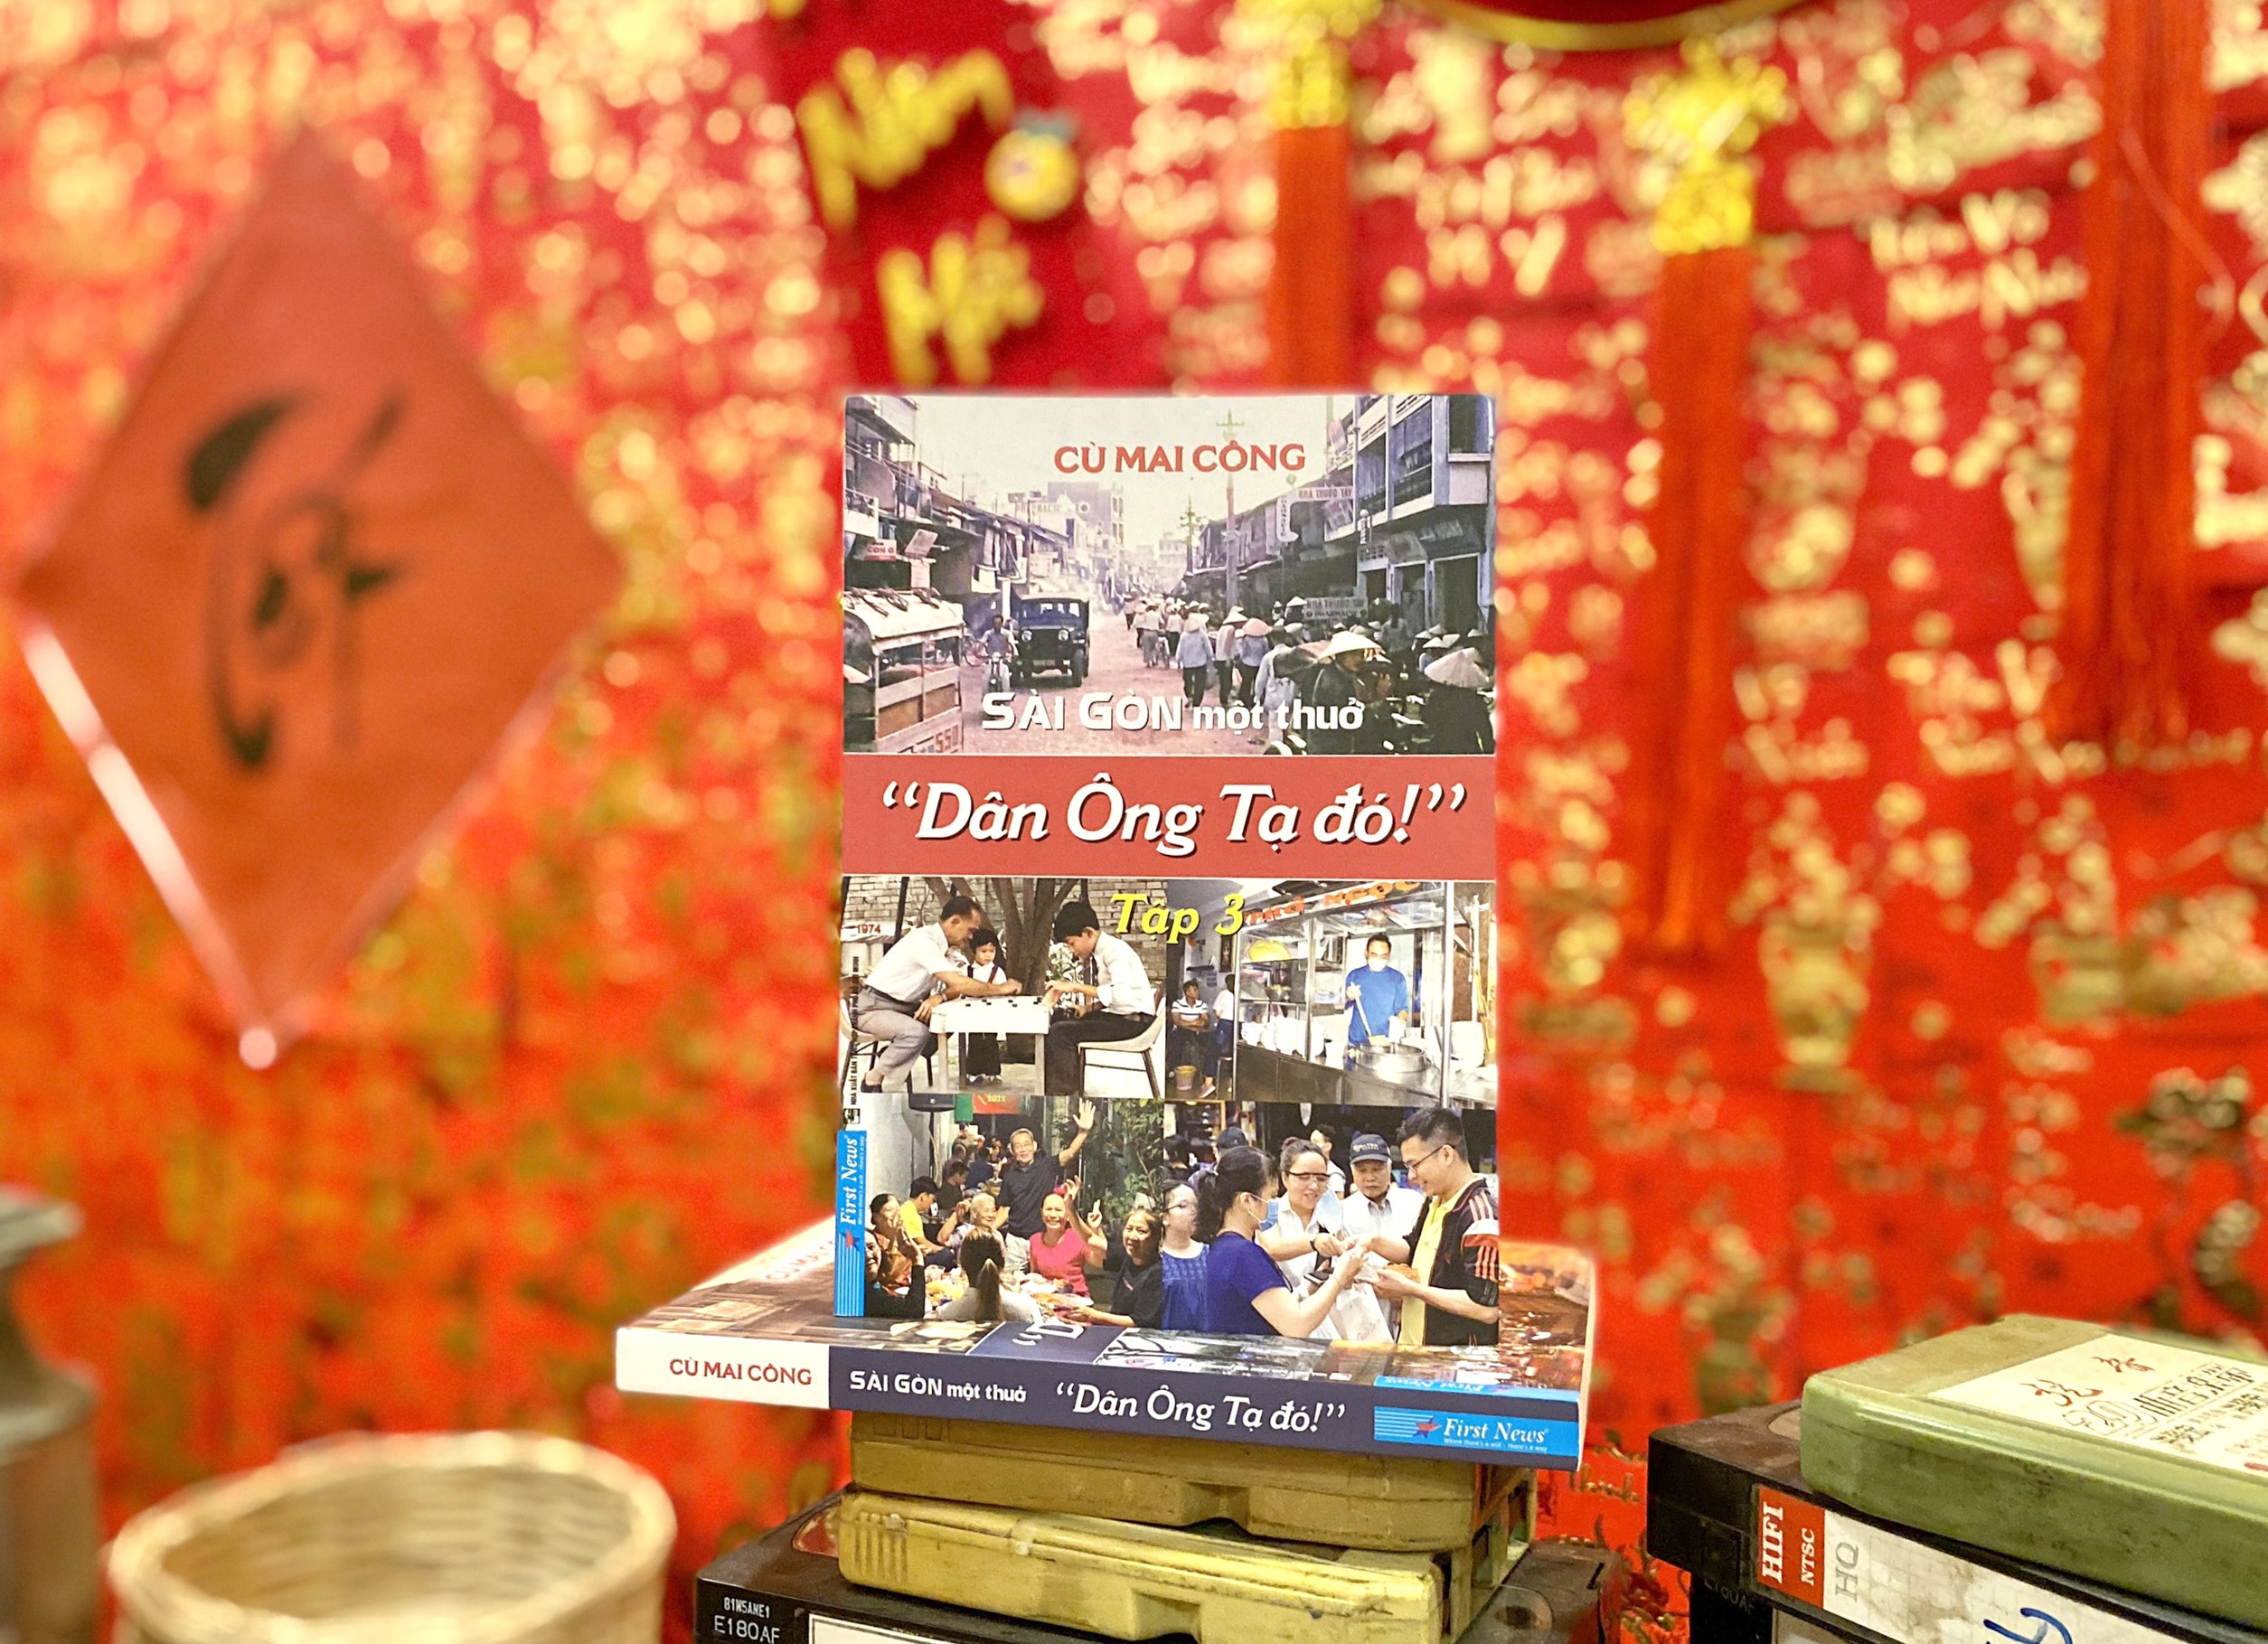 Khác với các tập sách trước về Ông Tạ, ở "Sài Gòn một thuở" - "Dân Ông Tạ đó!" tập 3, Cù Mai Công đã chọn một góc nhìn khác (Ảnh: First News).